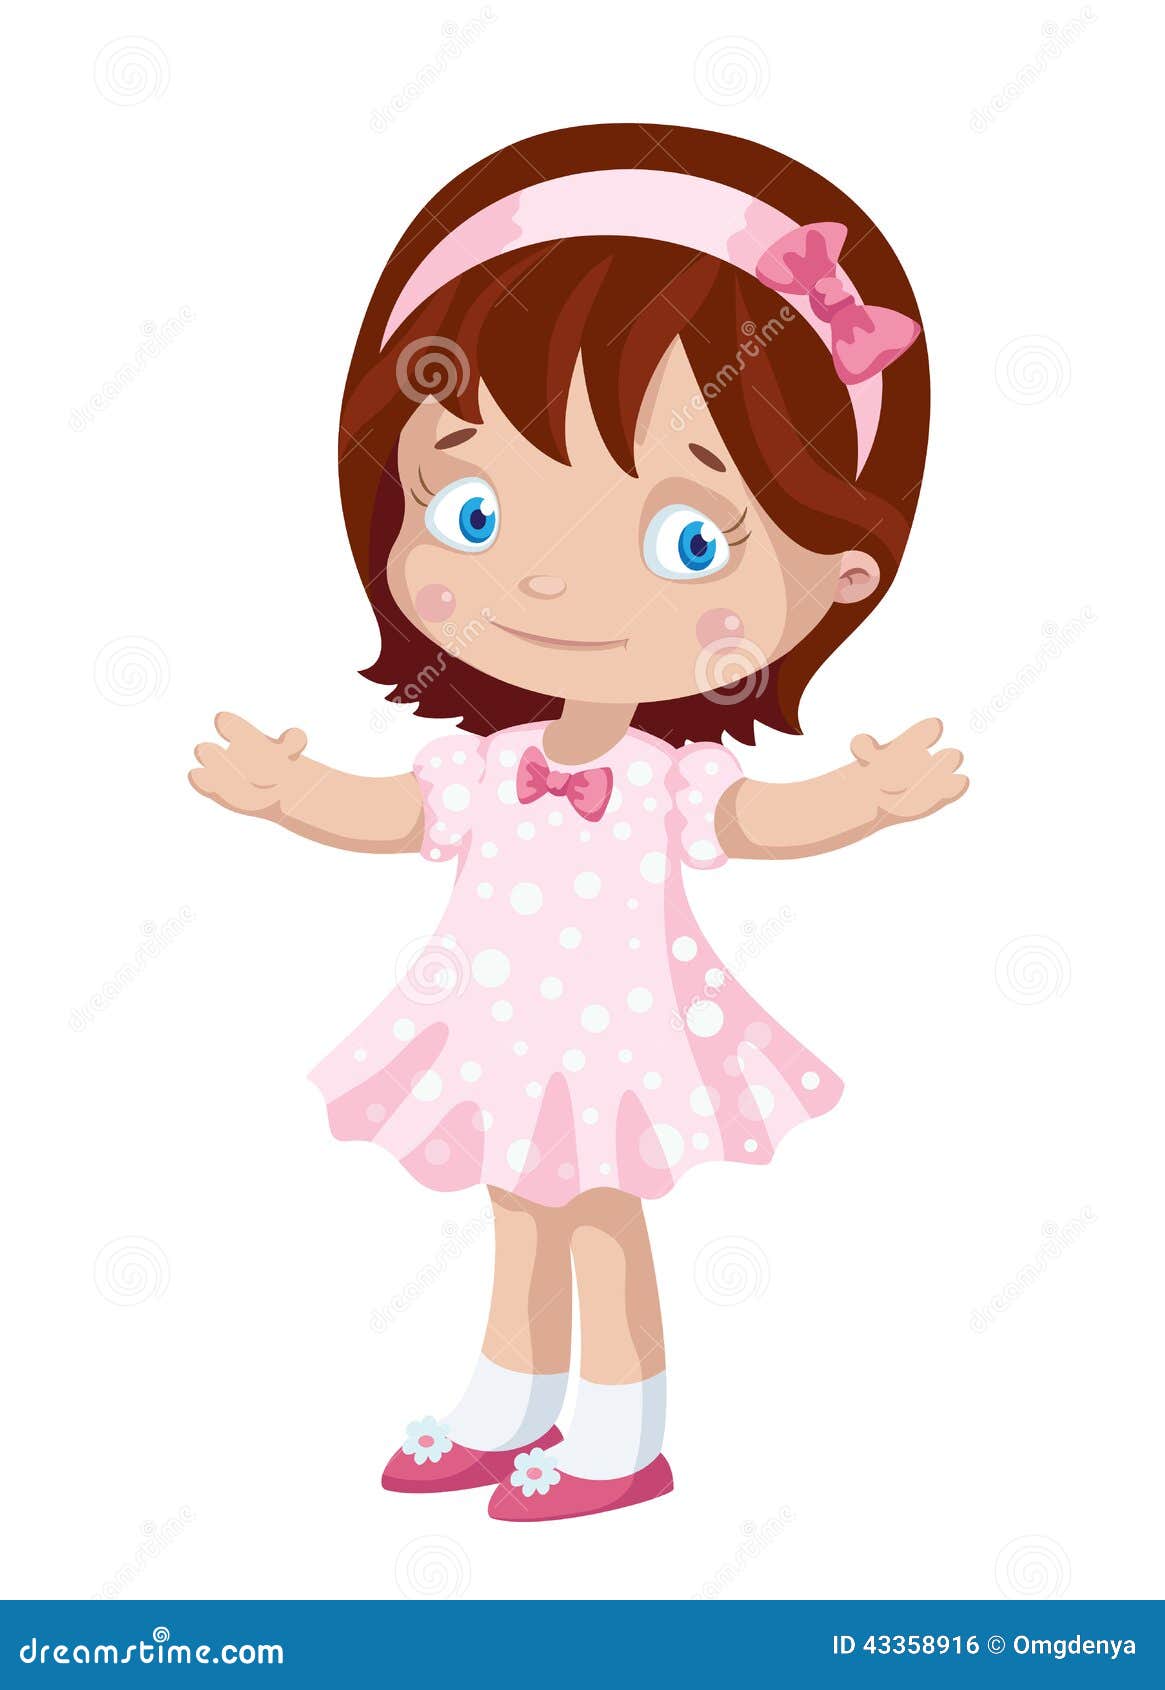 Girl cute stock vector. Illustration of children, dress - 43358916